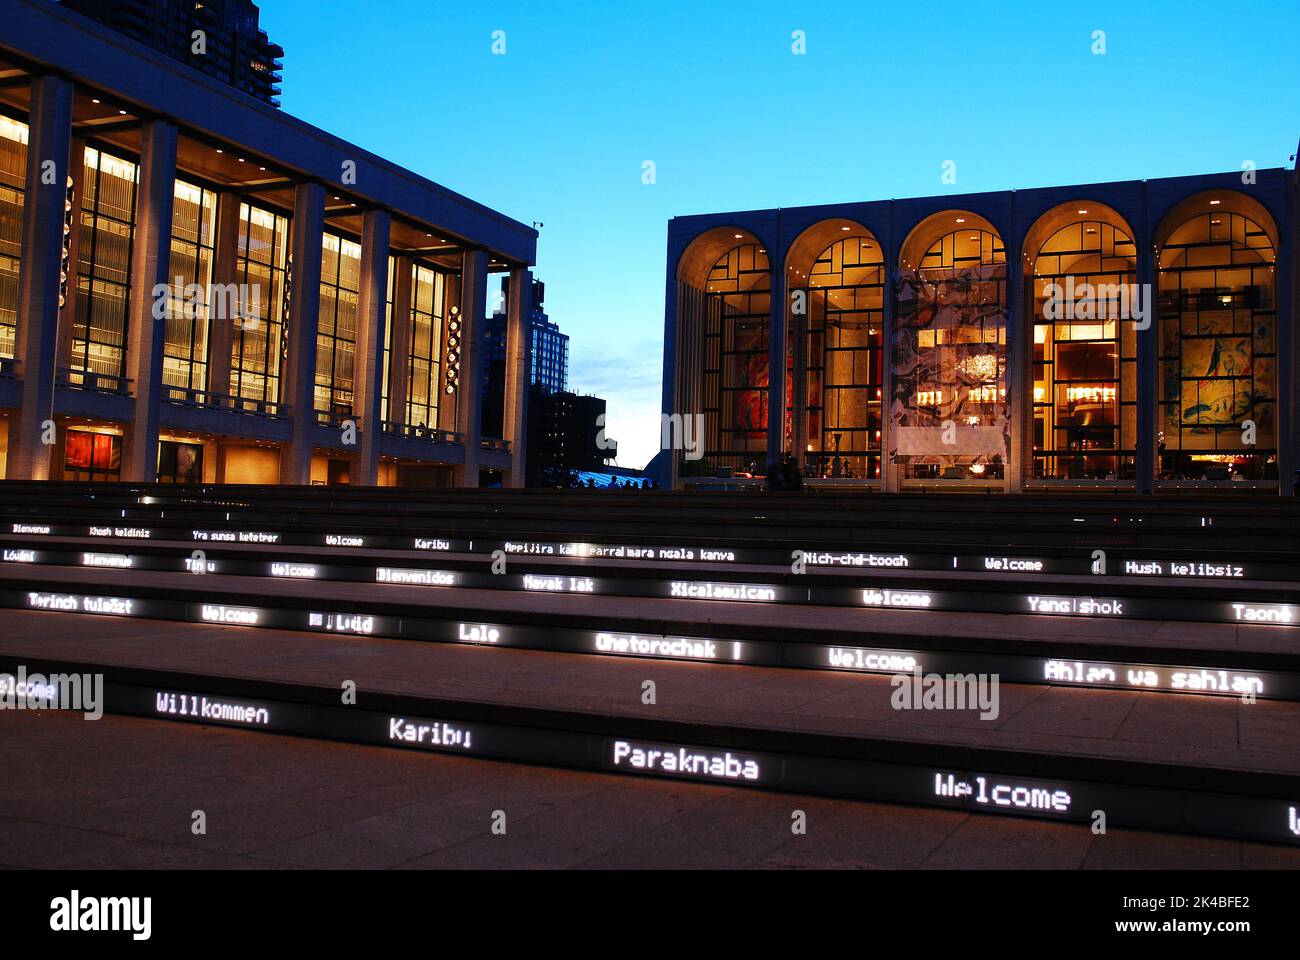 Die Stufen des Lincoln Center Performing Arts Center in New York City begrüßen Gäste in der Nacht mit beleuchteten Grüßen in Fremdsprachen Stockfoto